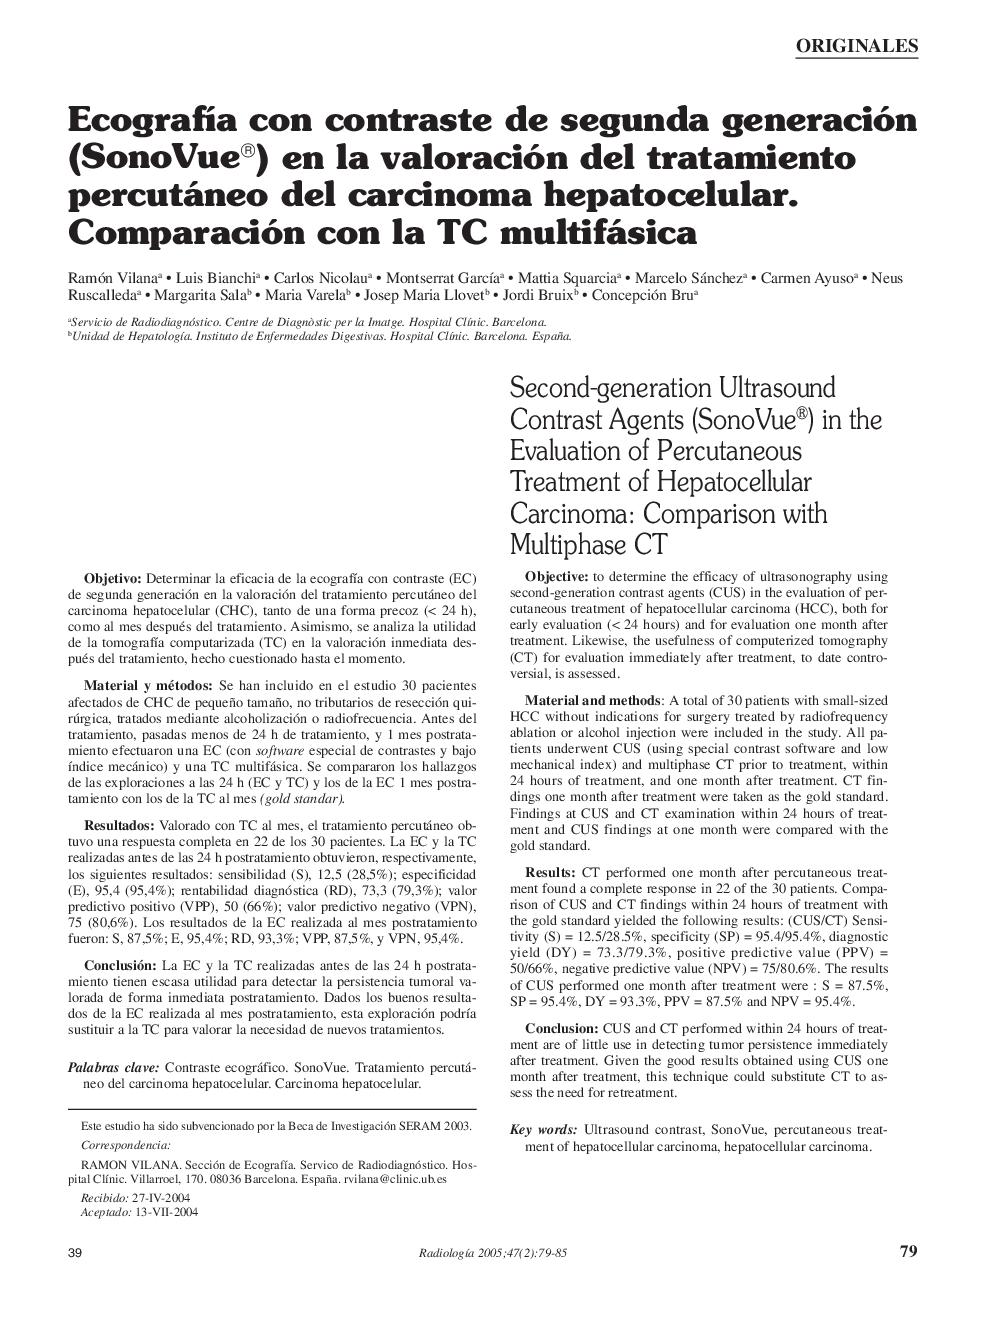 EcografÃ­a con contraste de segunda generación (SonoVue®) en la valoración del tratamiento percutáneo del carcinoma hepatocelular. Comparación con la TC multifásica